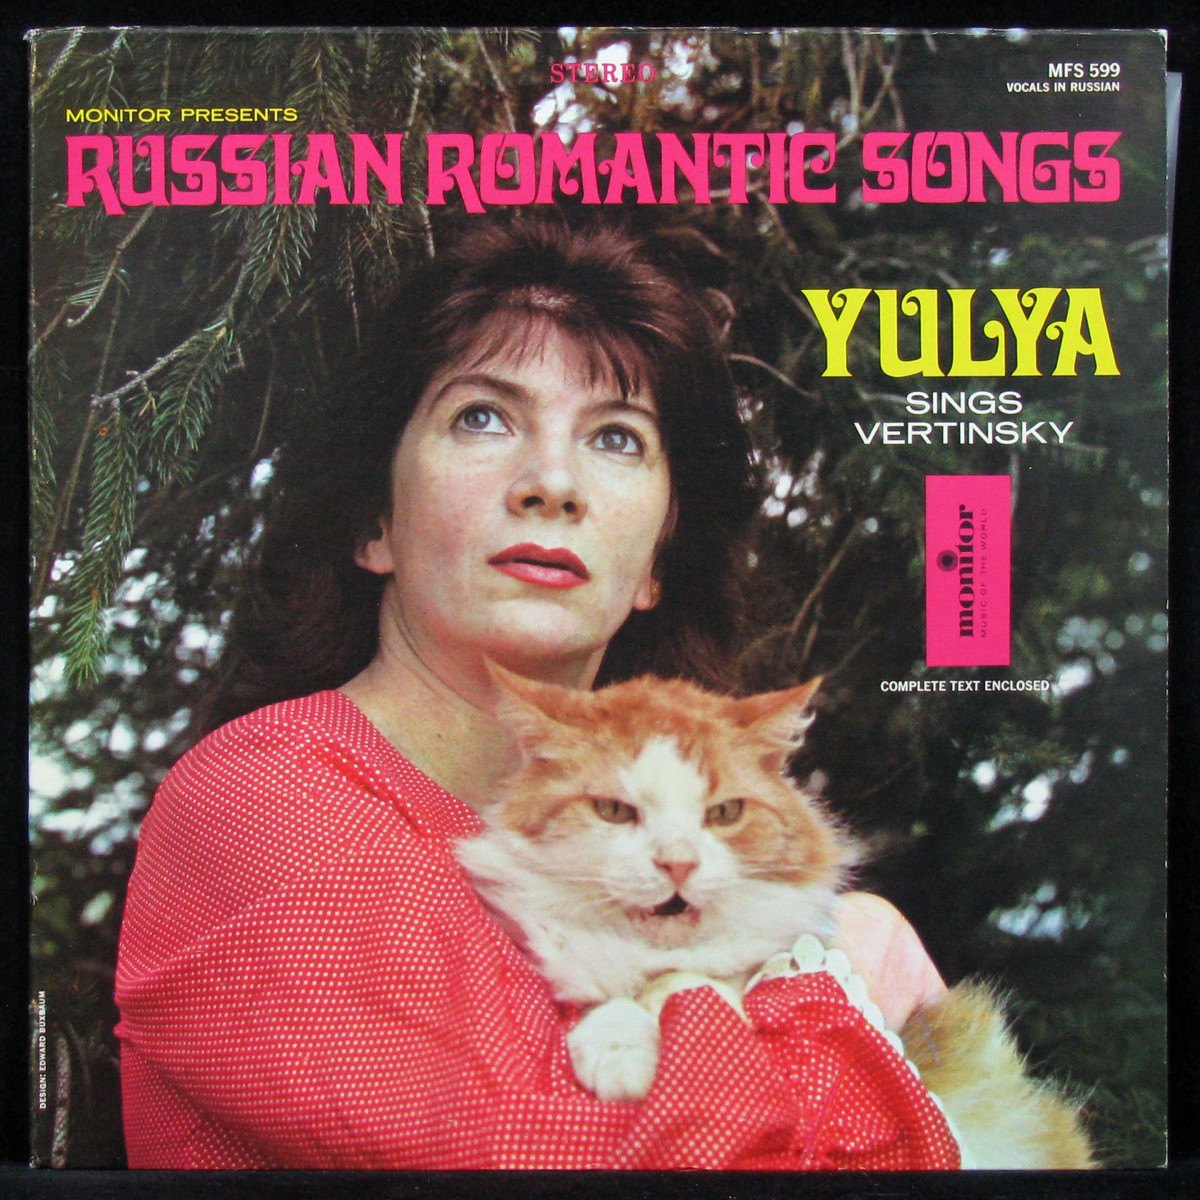 Yulya Sings Vertinsky